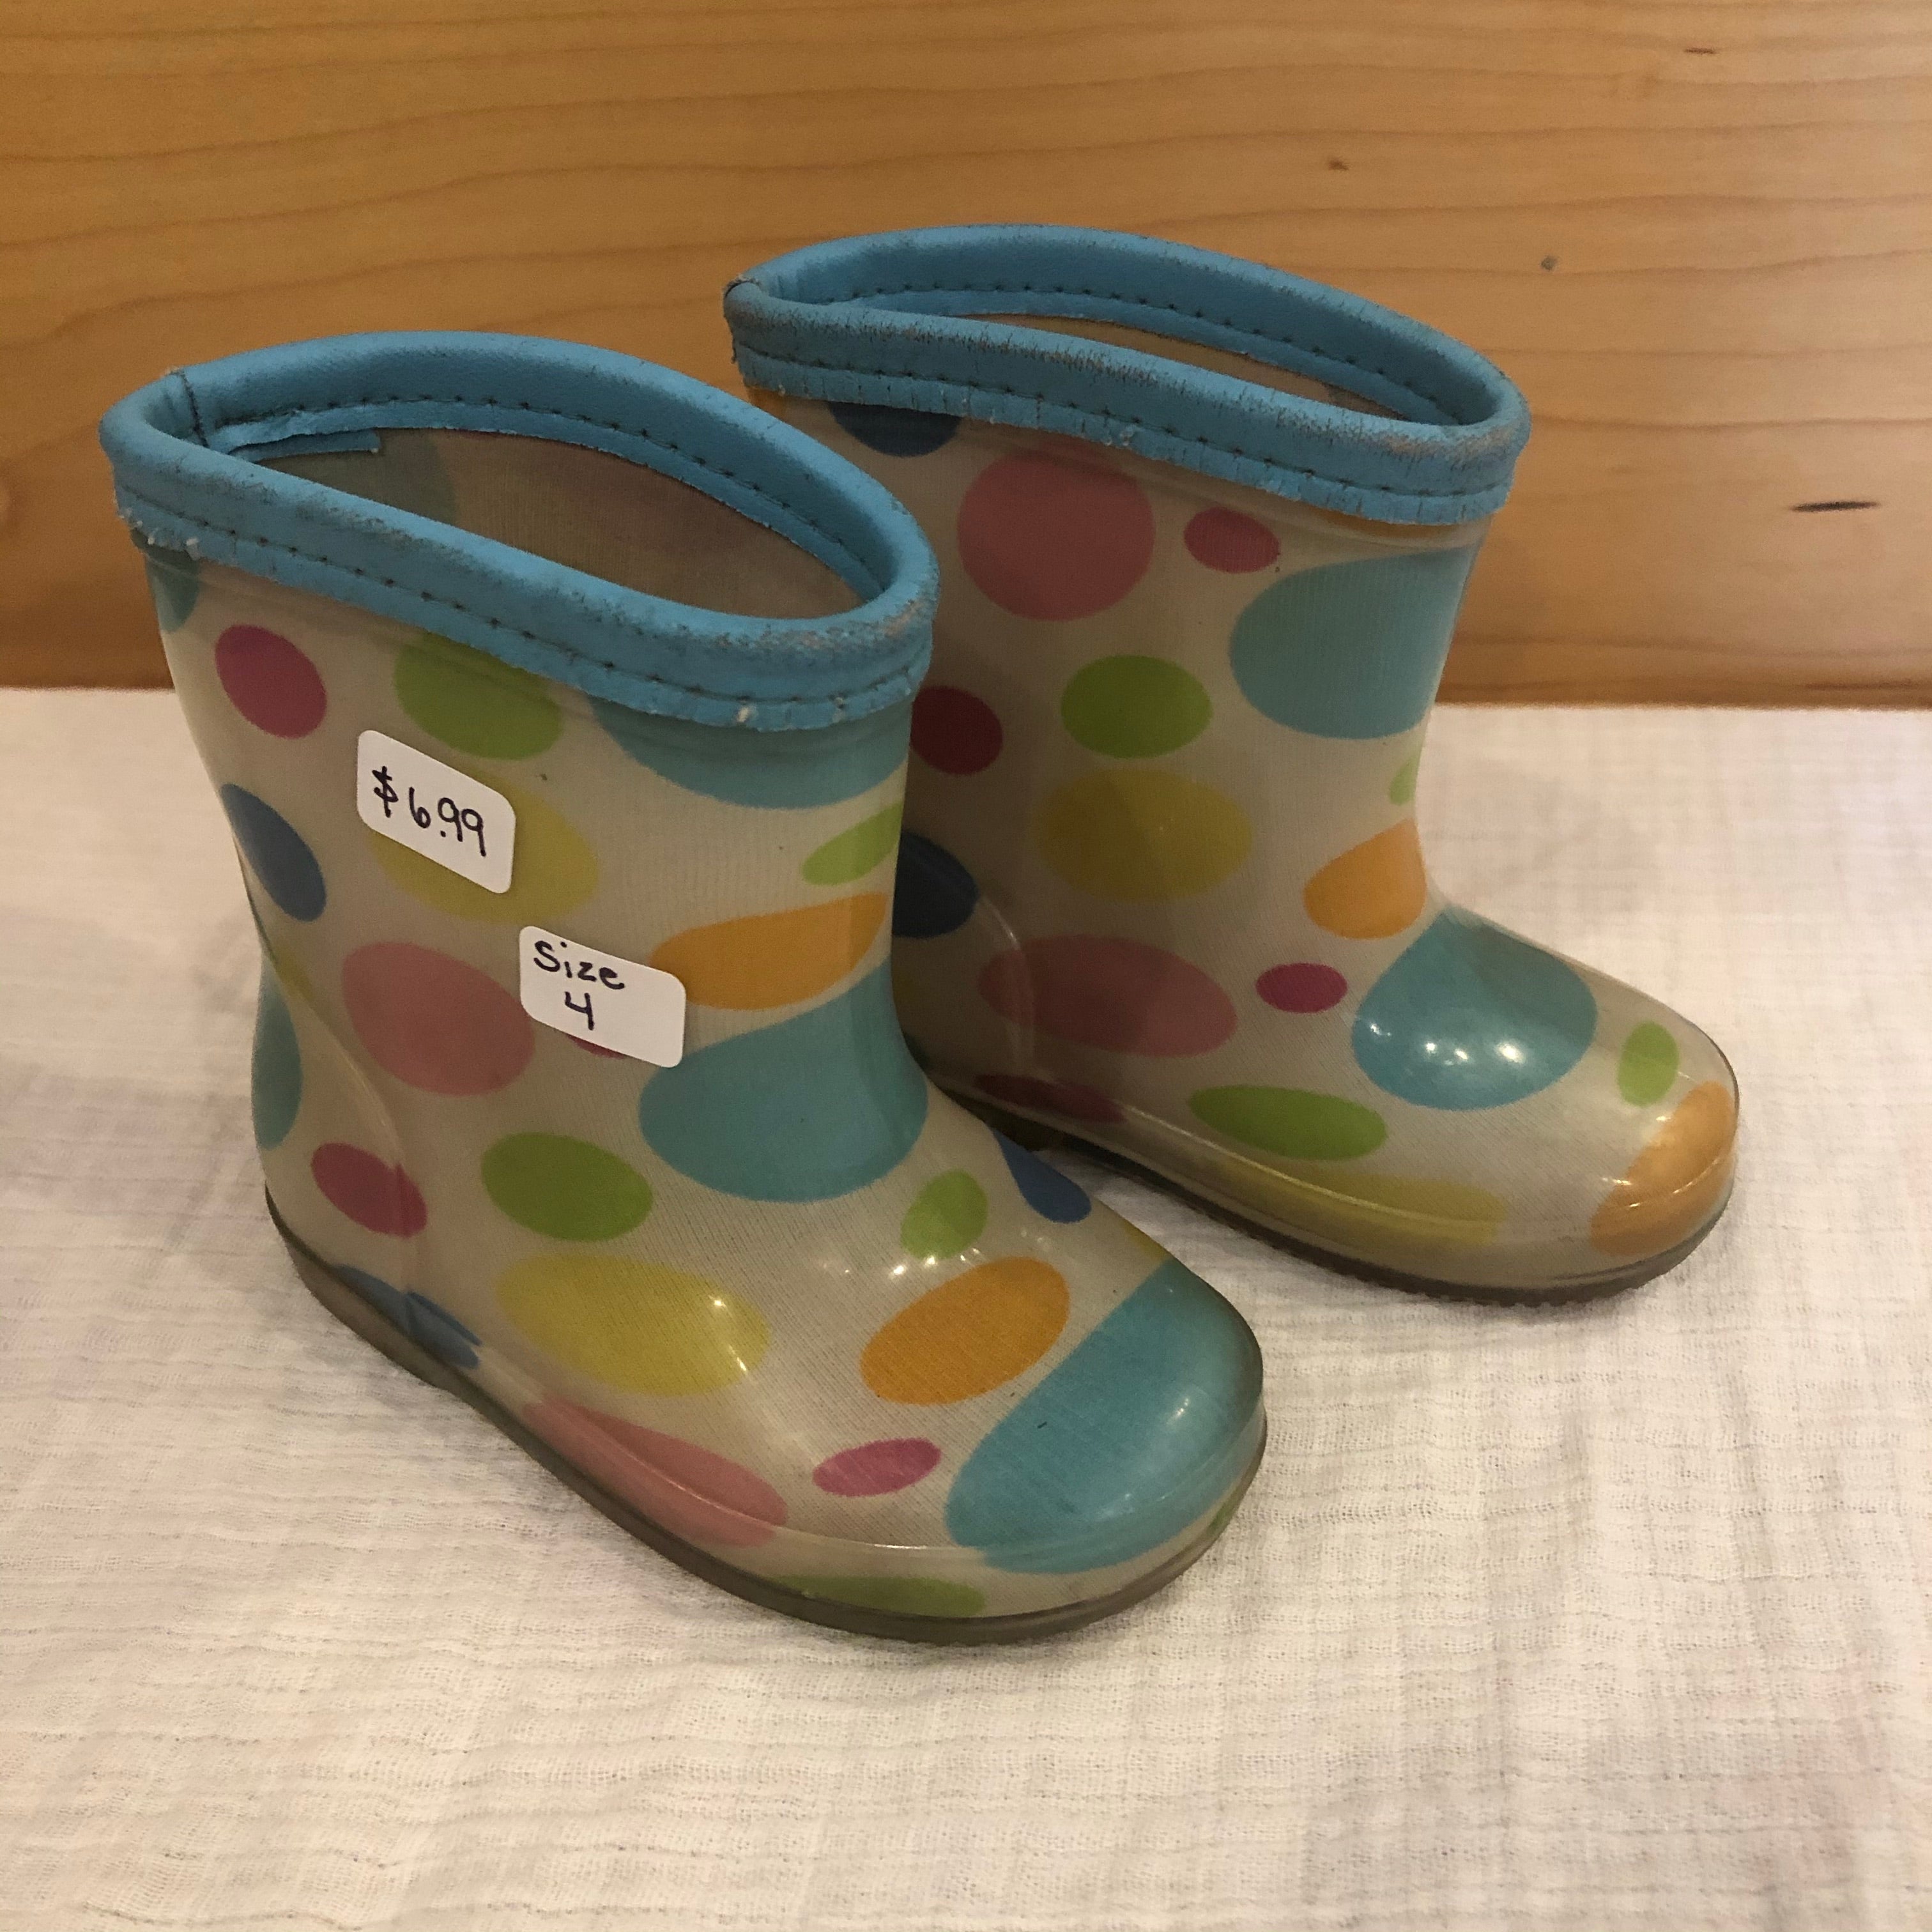 Size 4 KEYS rain boots